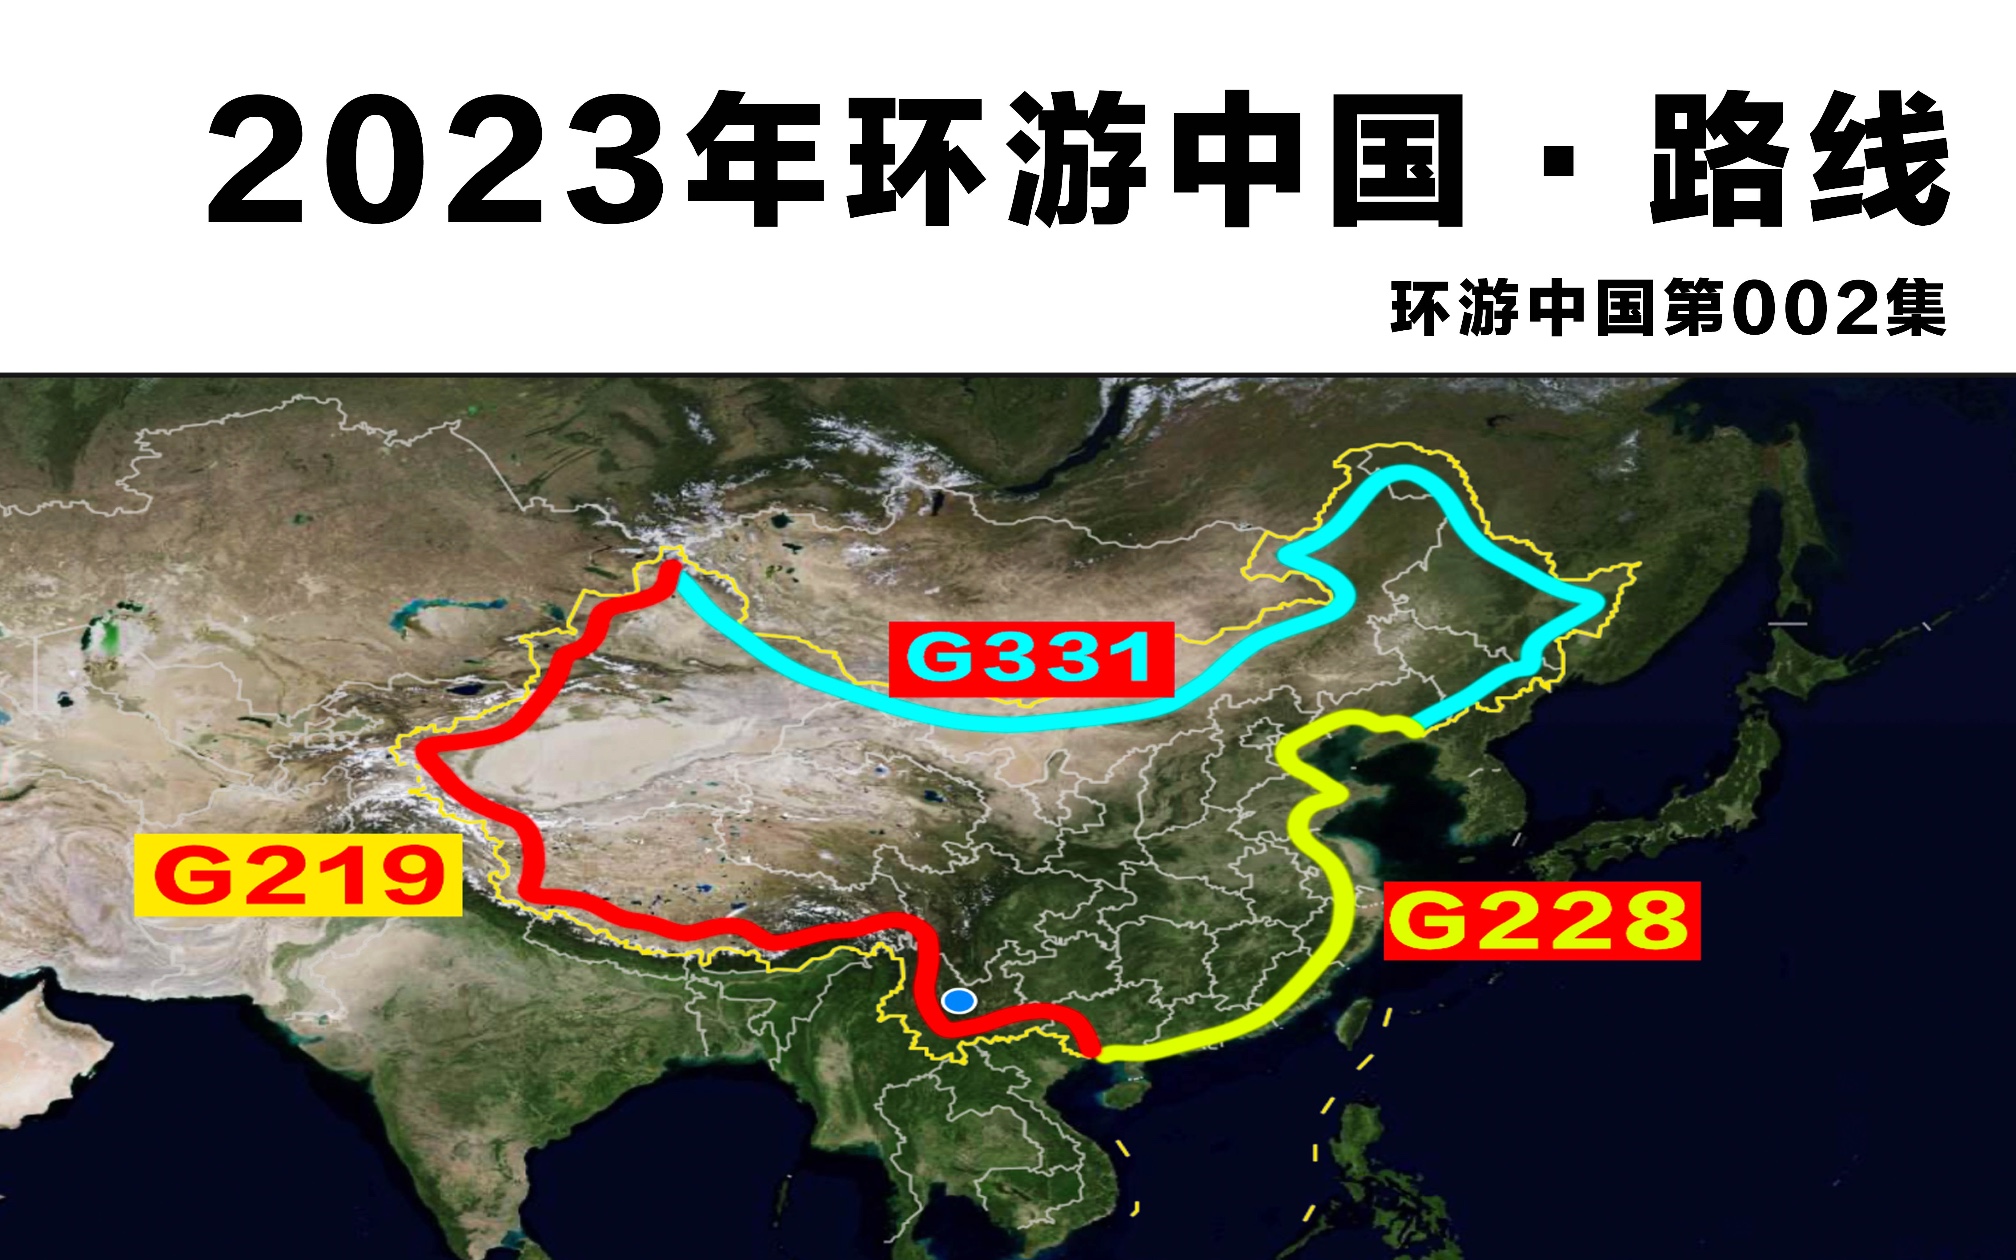 这三条国道连起来恰好是环游中国的绝佳路线!大家觉得怎么样呢?